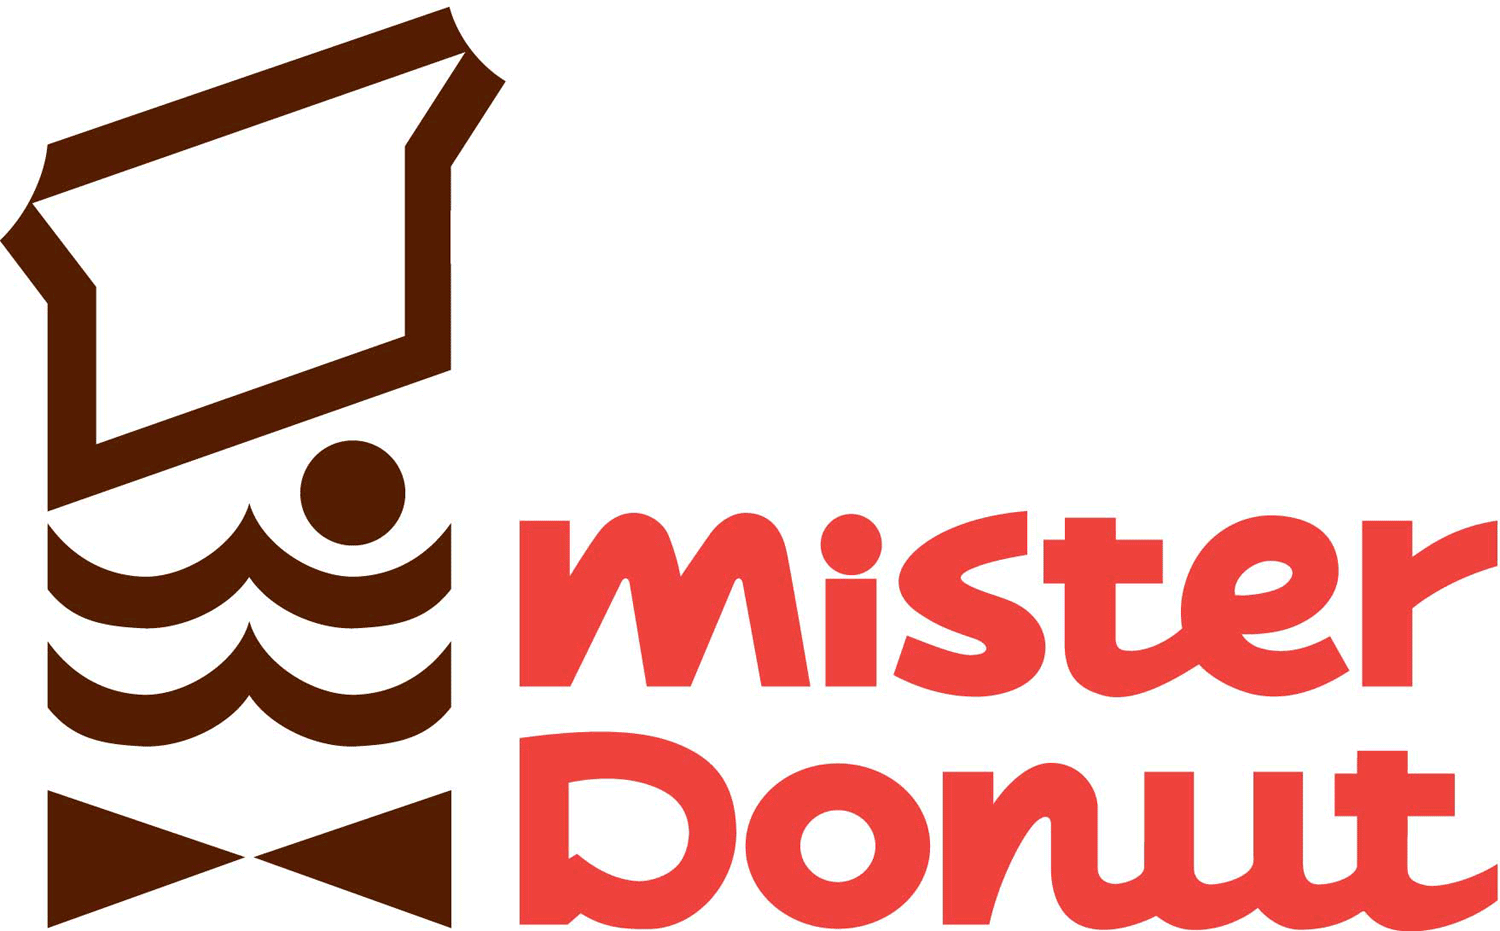 Mister Donut ミスタードーナツ ロゴマーク Logomark Mania 世界のかわいいロゴマーク集 企業ロゴ ブランドロゴ